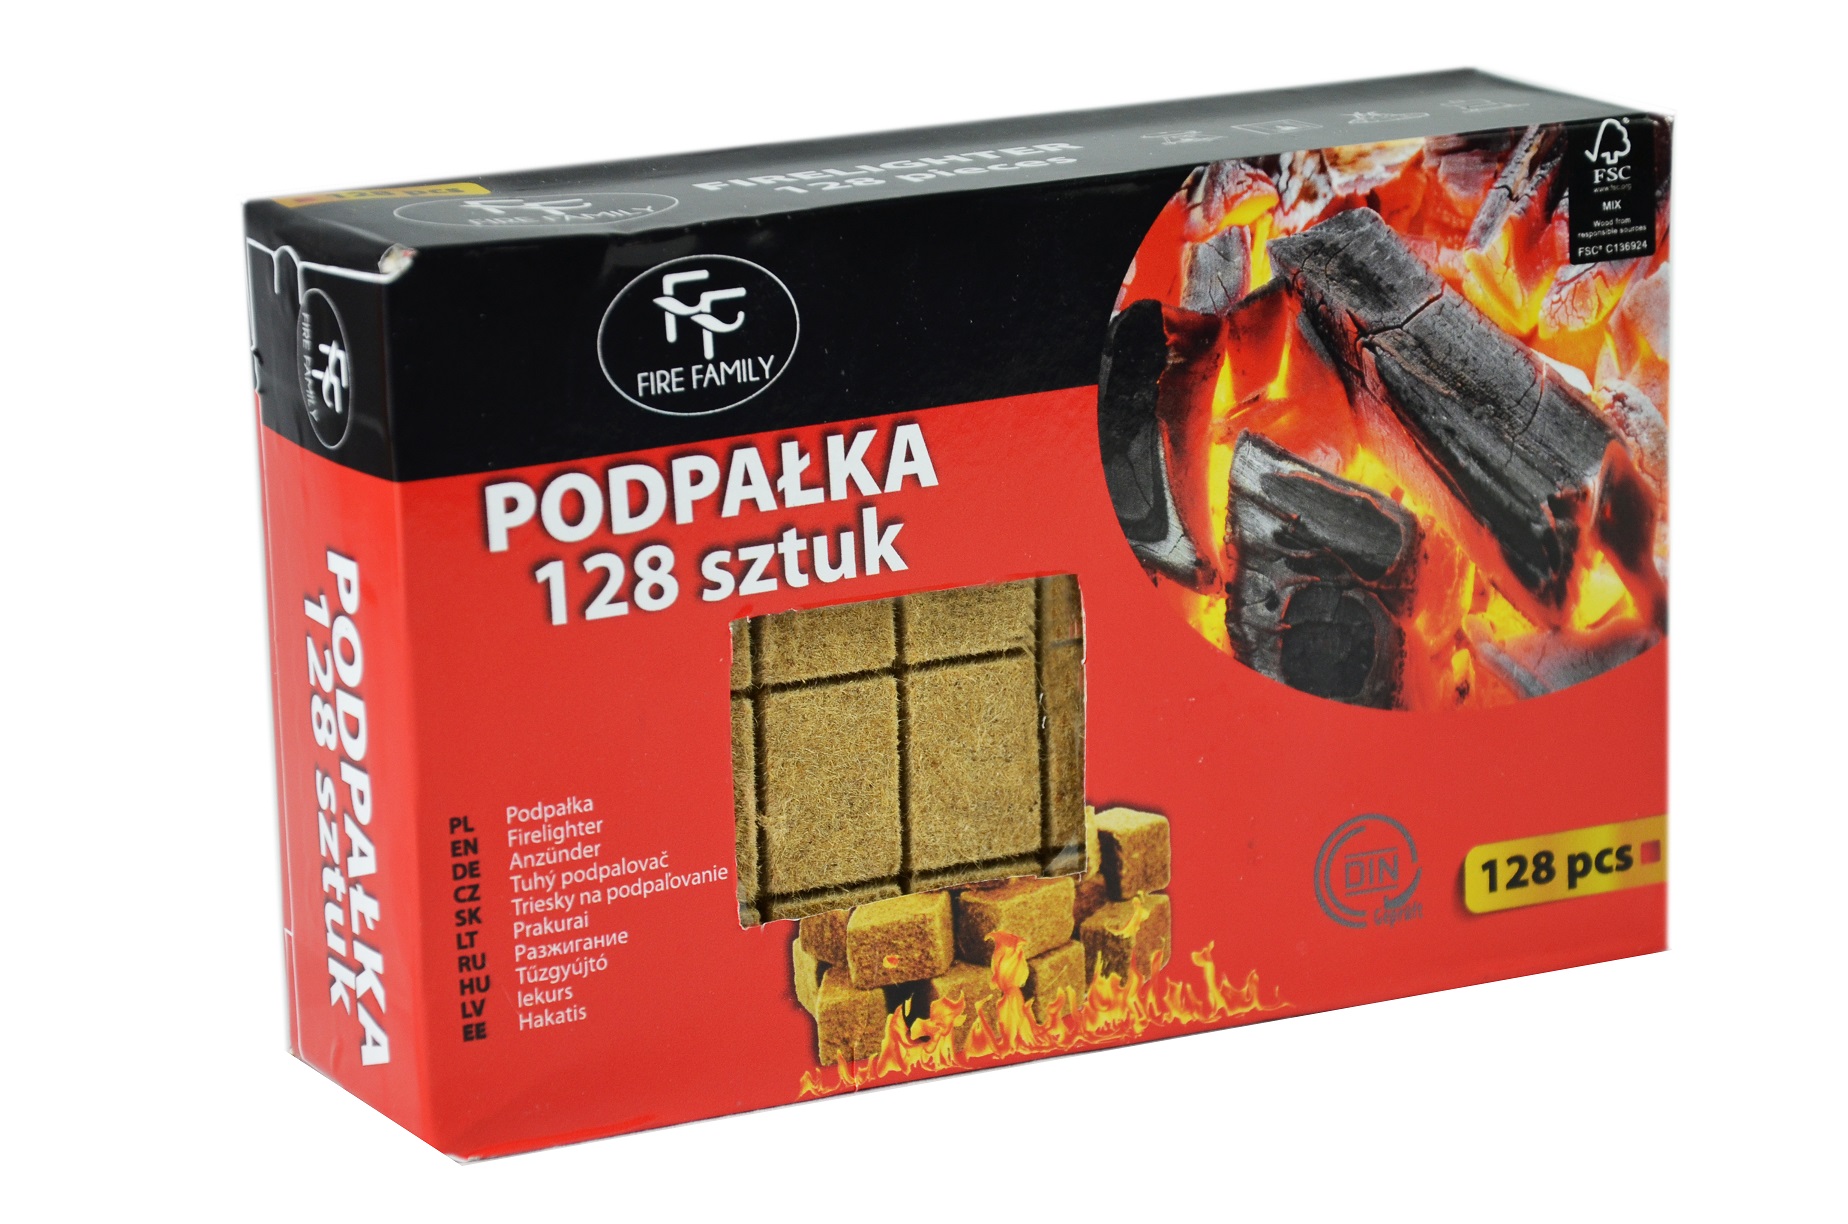 Firelighter "FF 128 pcs" – box